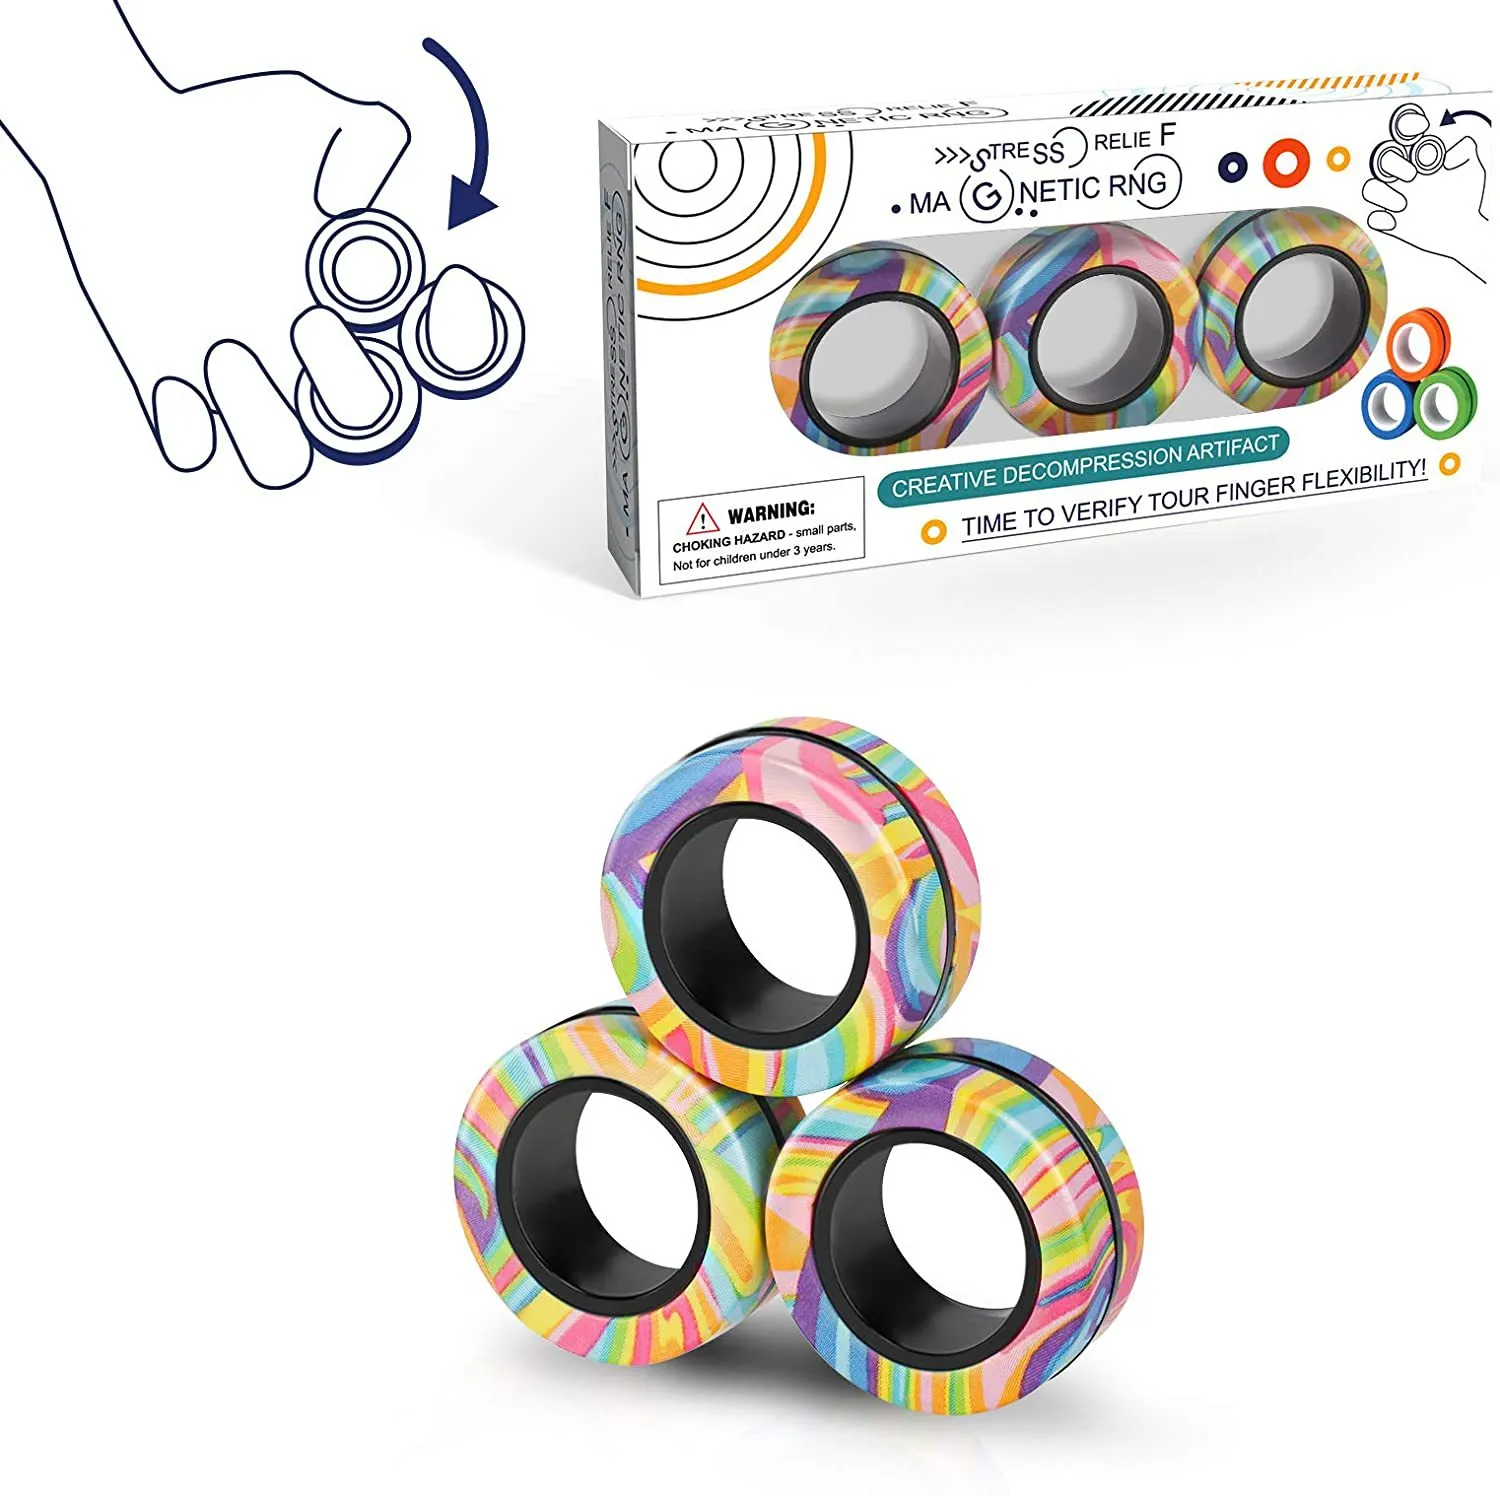 Brinquedos Magnéticos Anéis Anuncios Fidget Toy Magic Ringtool Bracelete Dedo Spinner Ringtool Kids Adult Denompression SD698